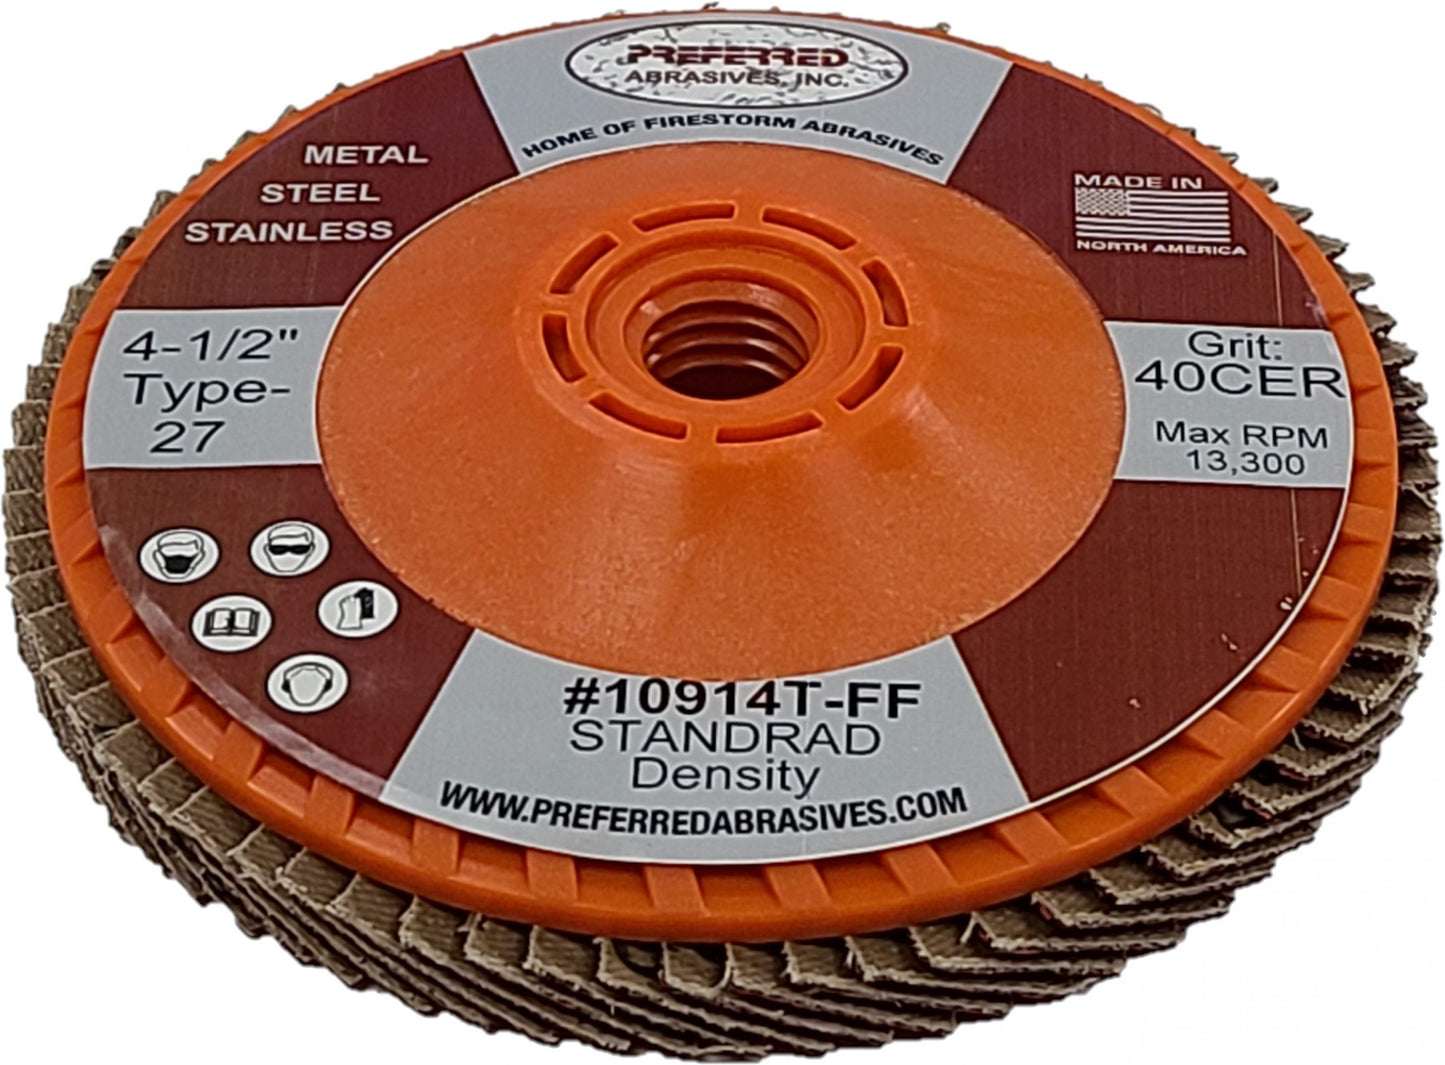 Preferred Abrasives Firestorm FasTrim® Hi-Density Trimmable Flap Discs 36 Ceramic Grit 10918T-FF